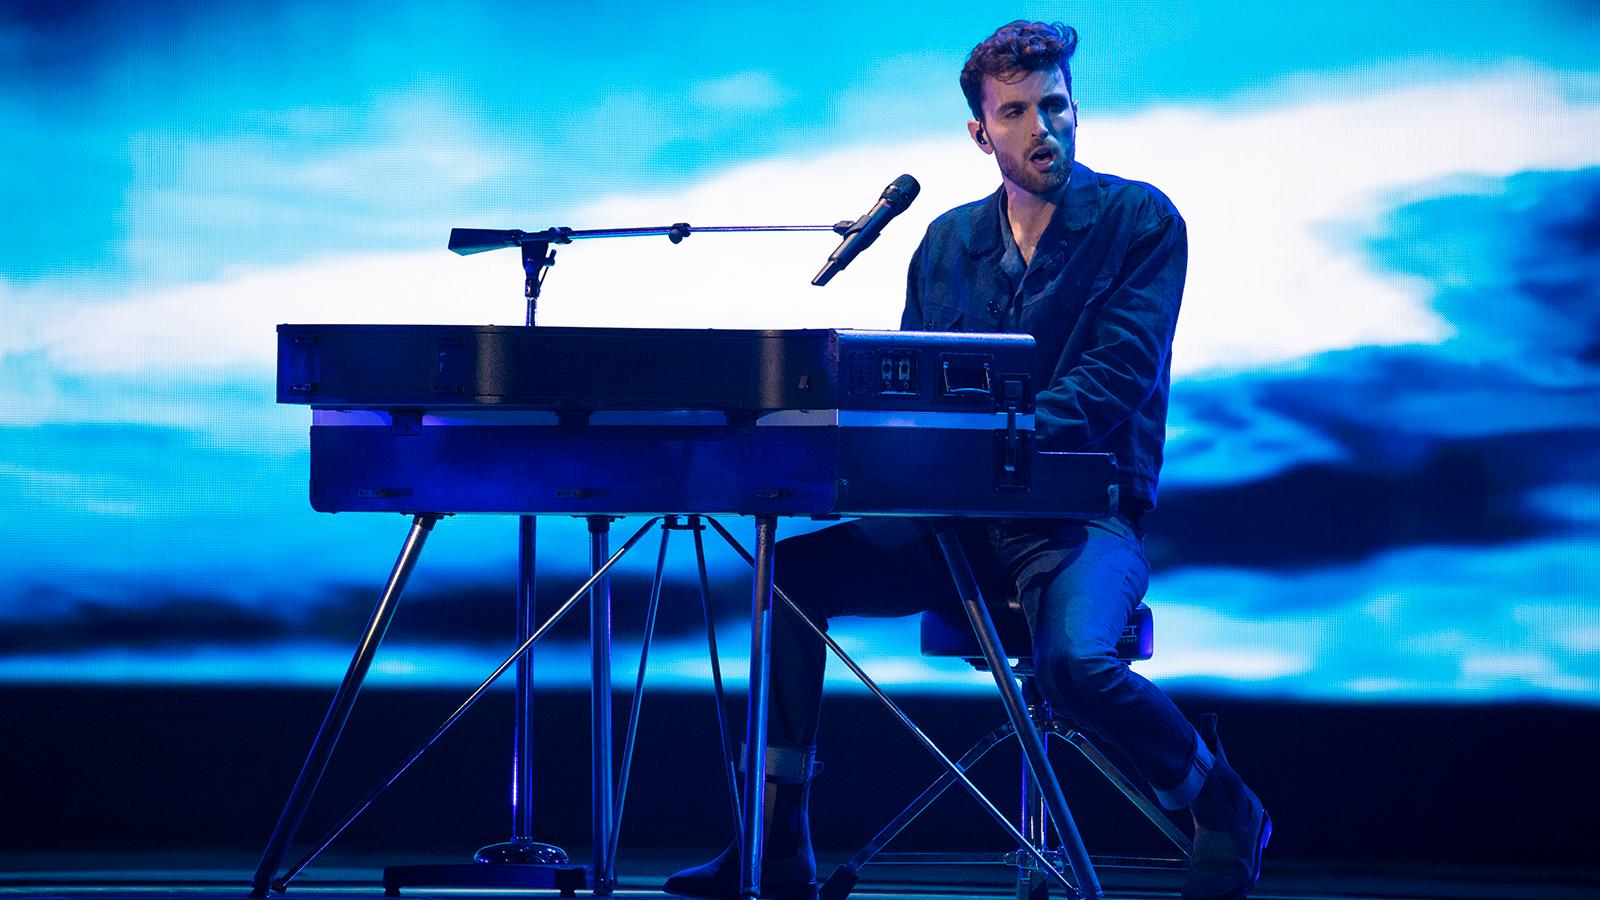 Duncan Laurence vann Eurovision song contest 2019, nästa år avgörs tävlingen därför i Nederländerna.